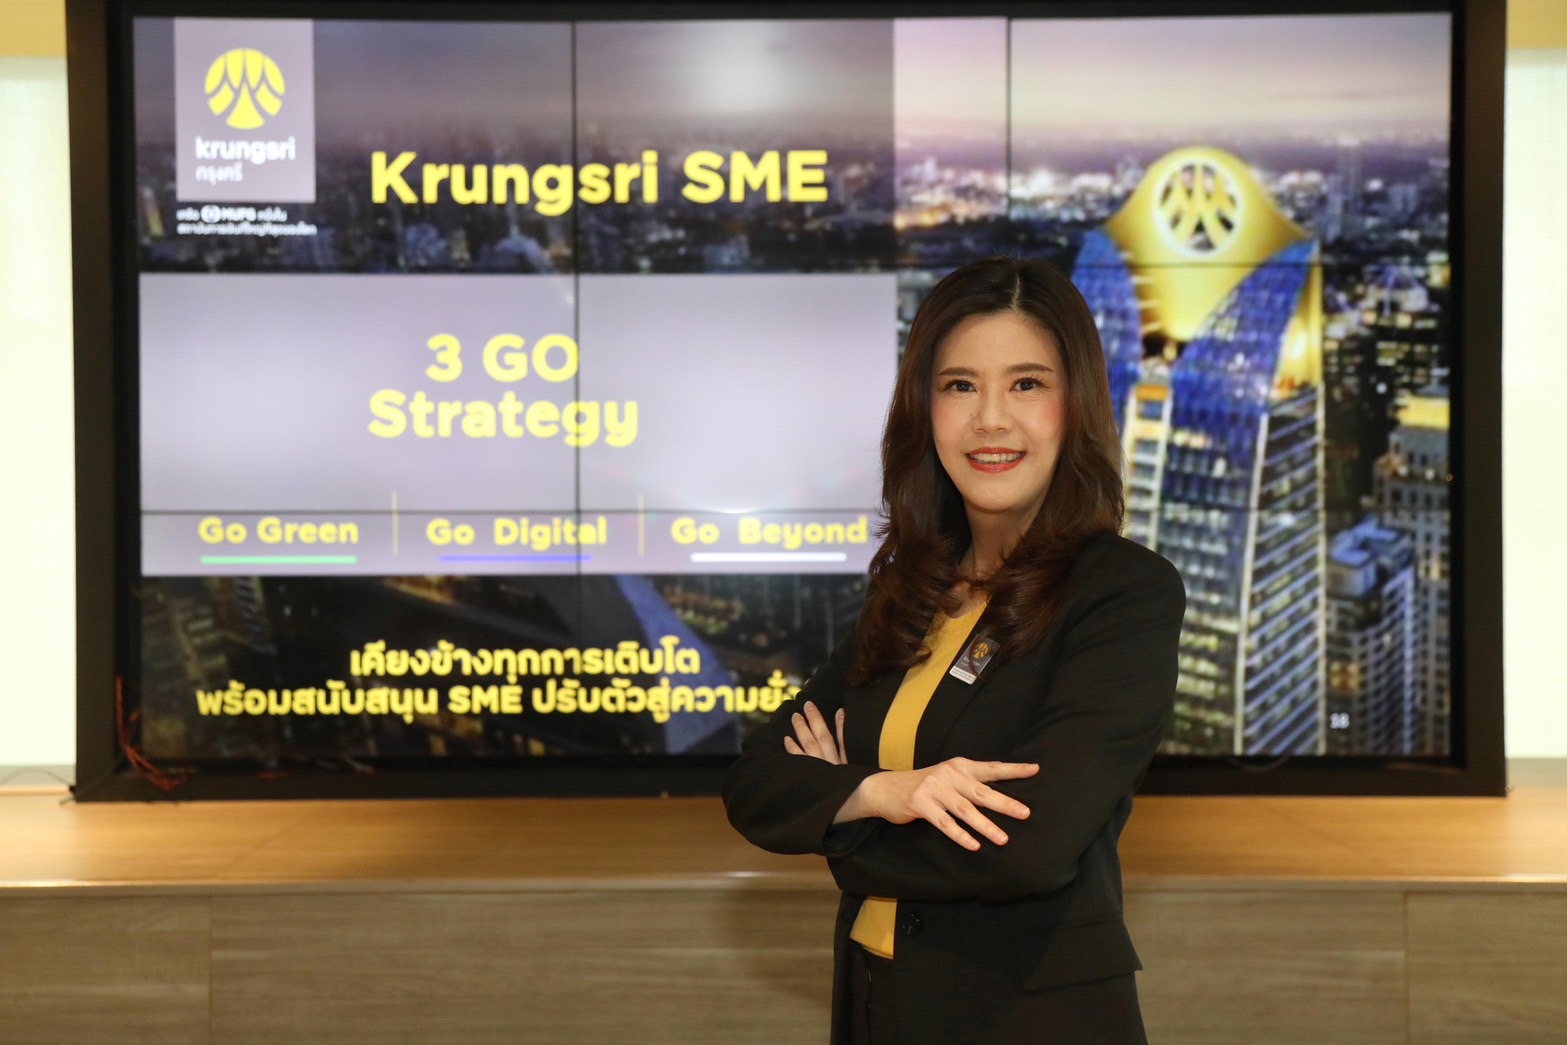 กรุงศรี SME เดินหน้าด้วยกลยุทธ์ 3GO‘GO Green – GO Digital – GO Beyond’ ปั้น SME ไทย เติบโตสู่ก้าวที่ยั่งยืน